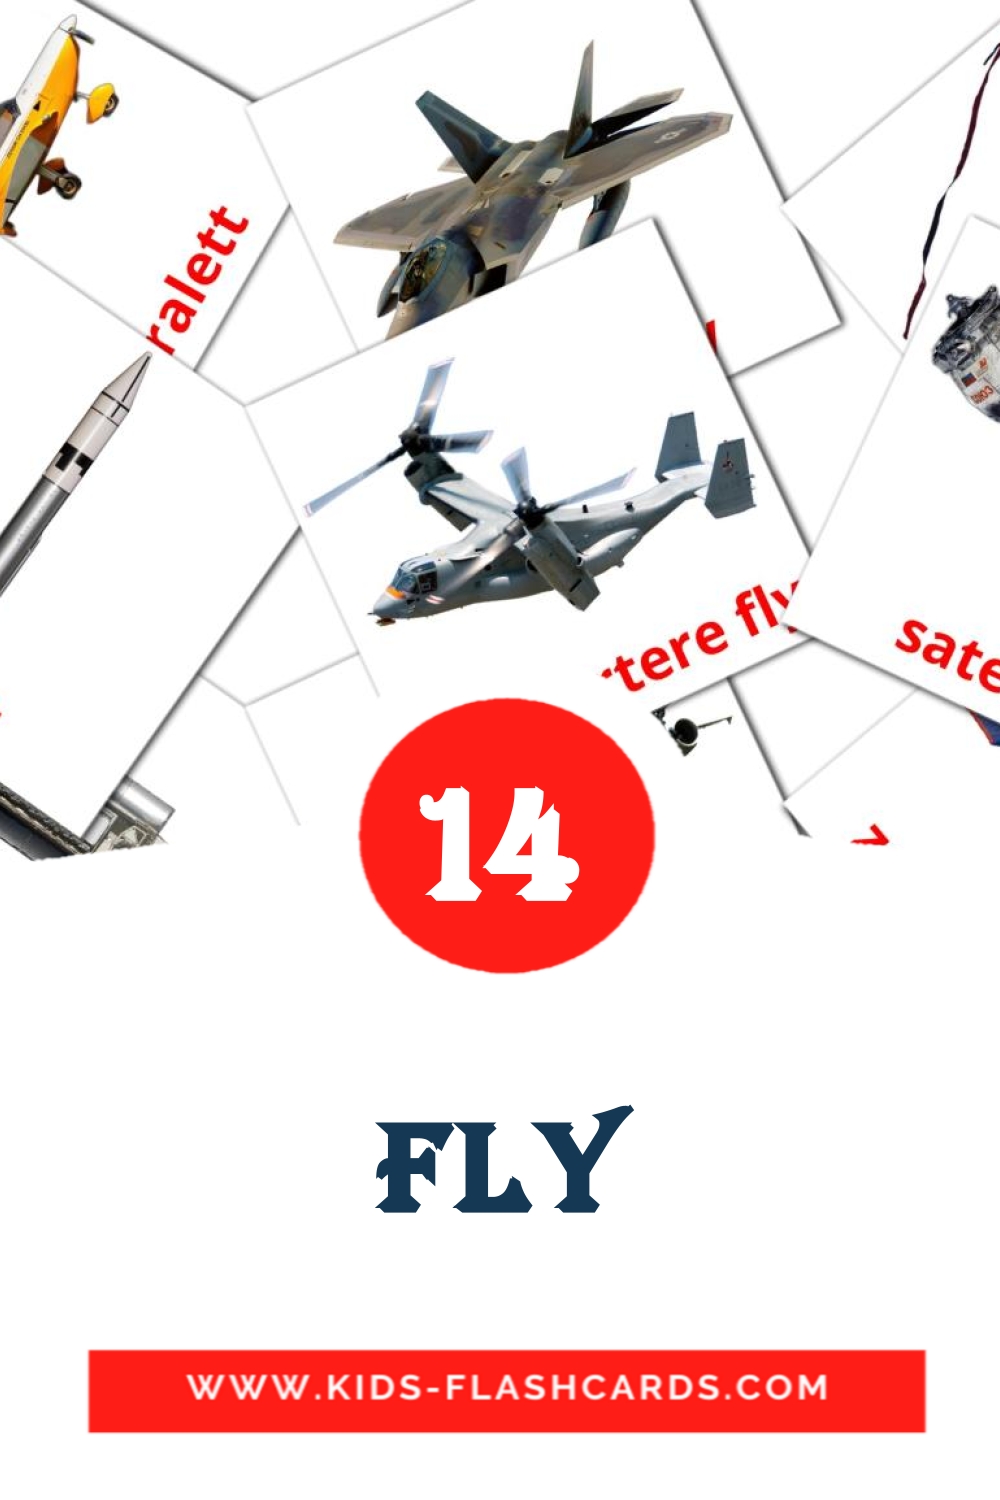 14 Fly fotokaarten voor kleuters in het noors